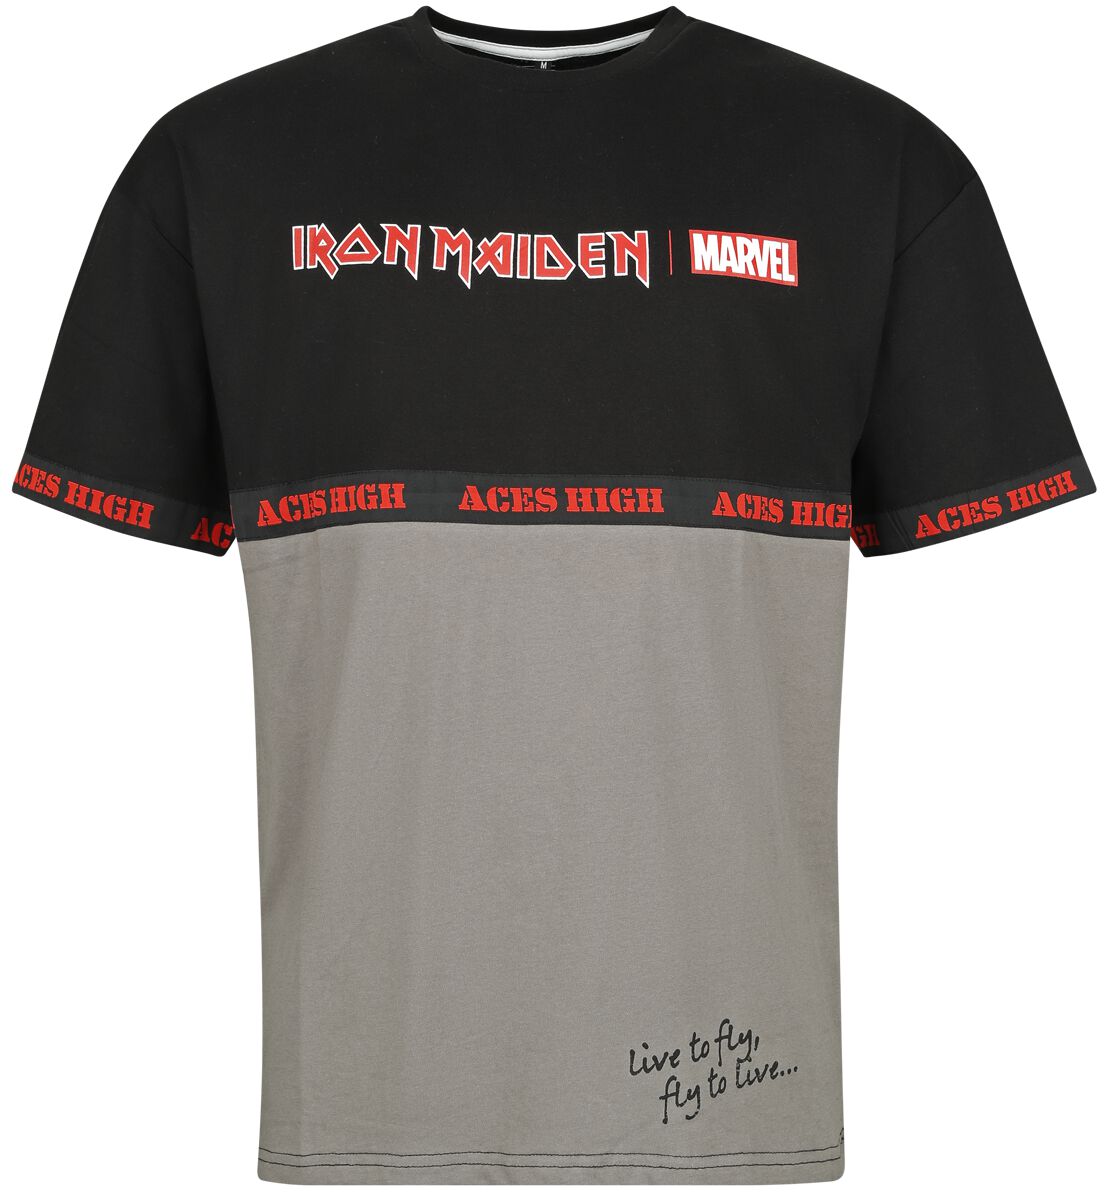 Iron Maiden Iron Maiden x Marvel Collection - Aces High War Machine T-Shirt schwarz grau in L